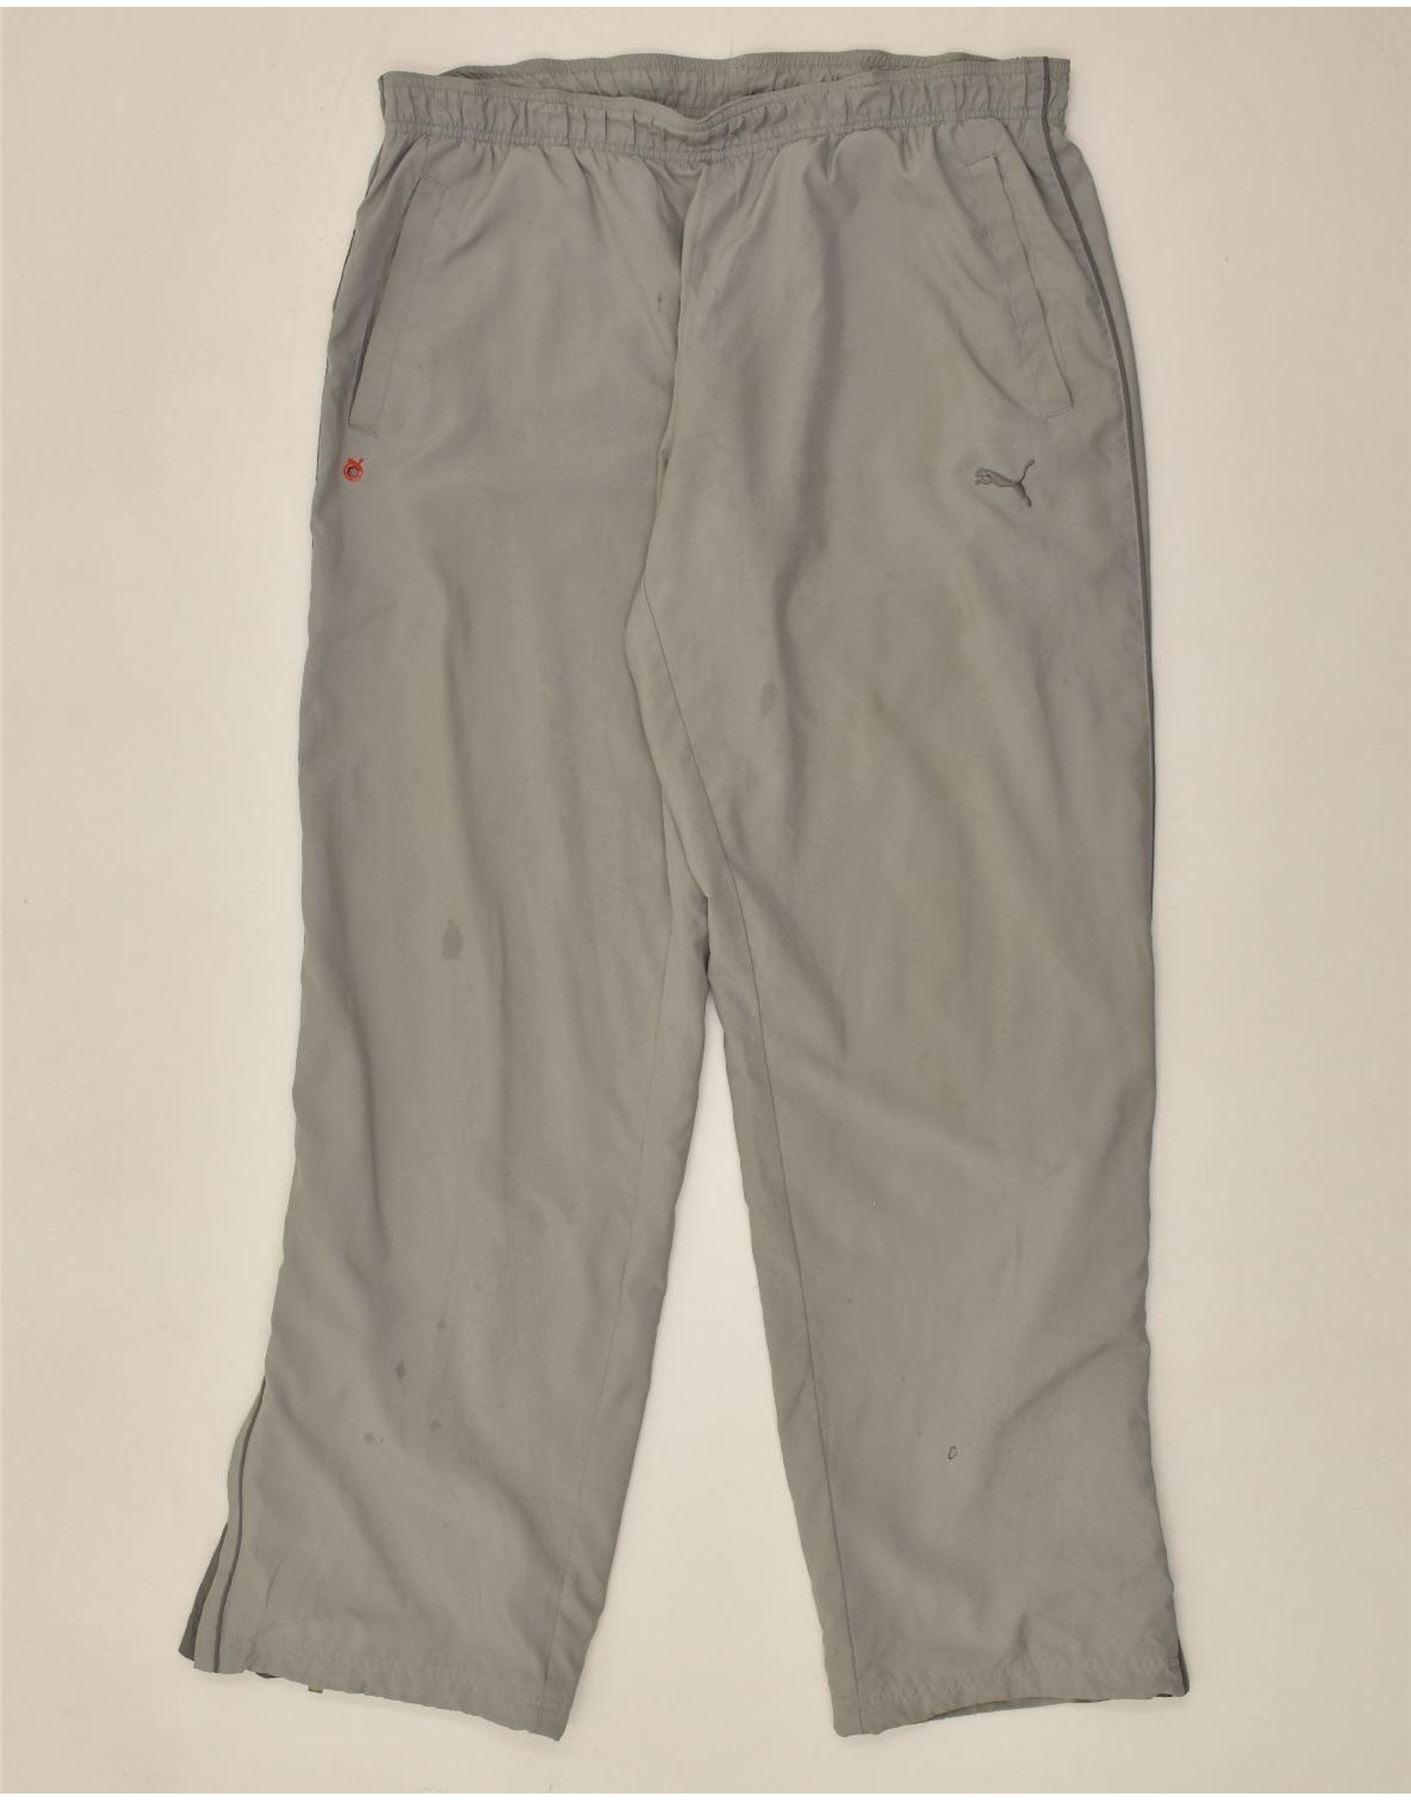 PUMA Træningsdragt bukser mænd, store grå | Vintage og tøj online | Genbrugsbutik